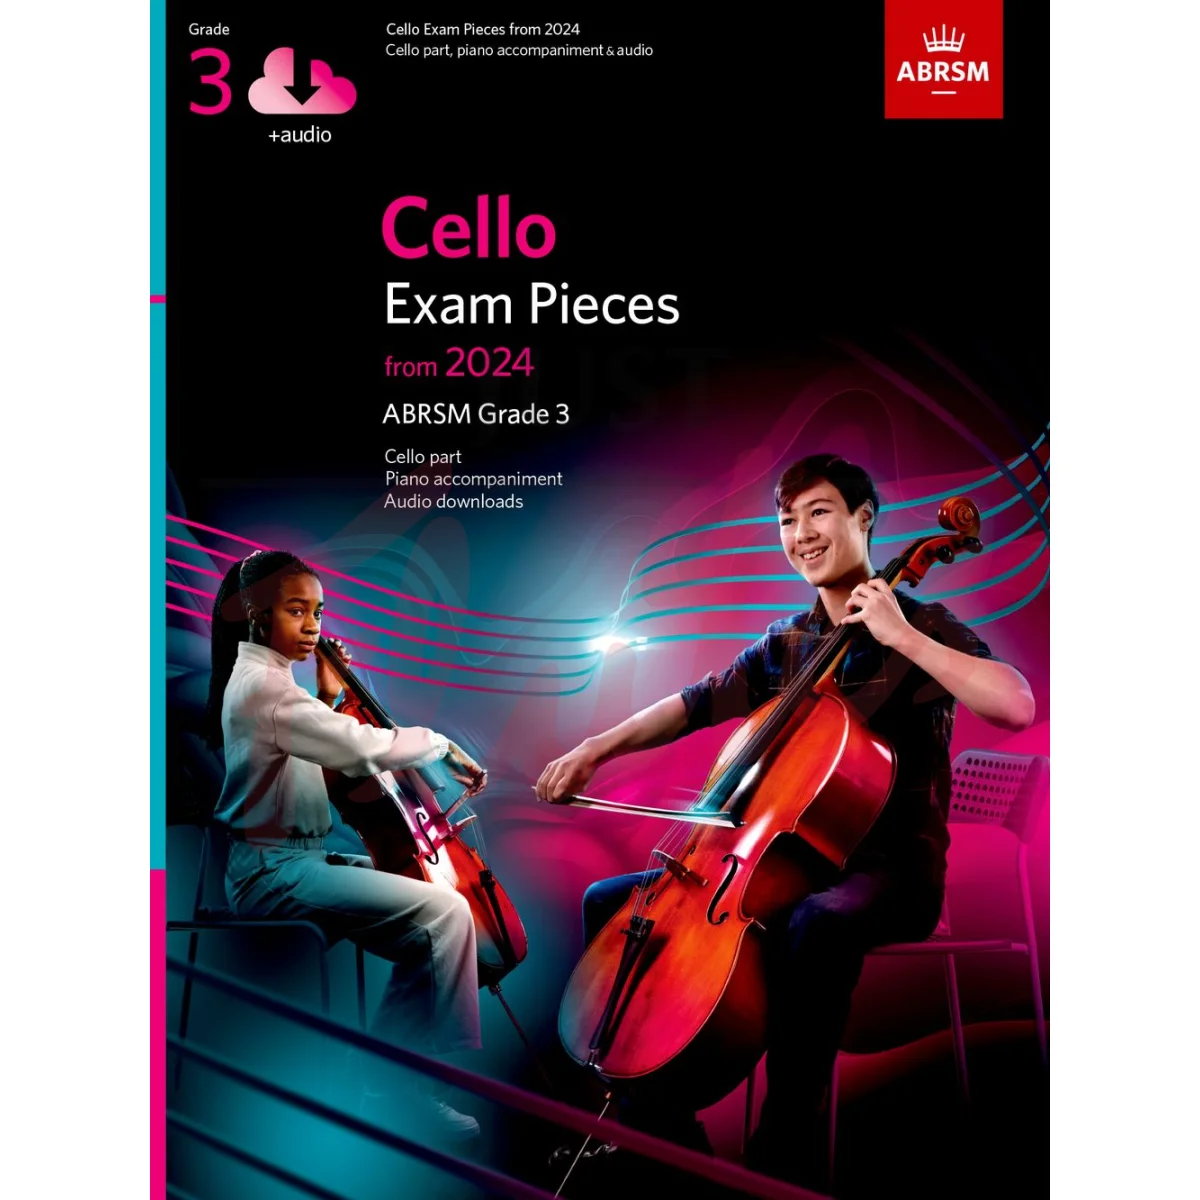 Cello Exam Pieces from 2024, Grade 3